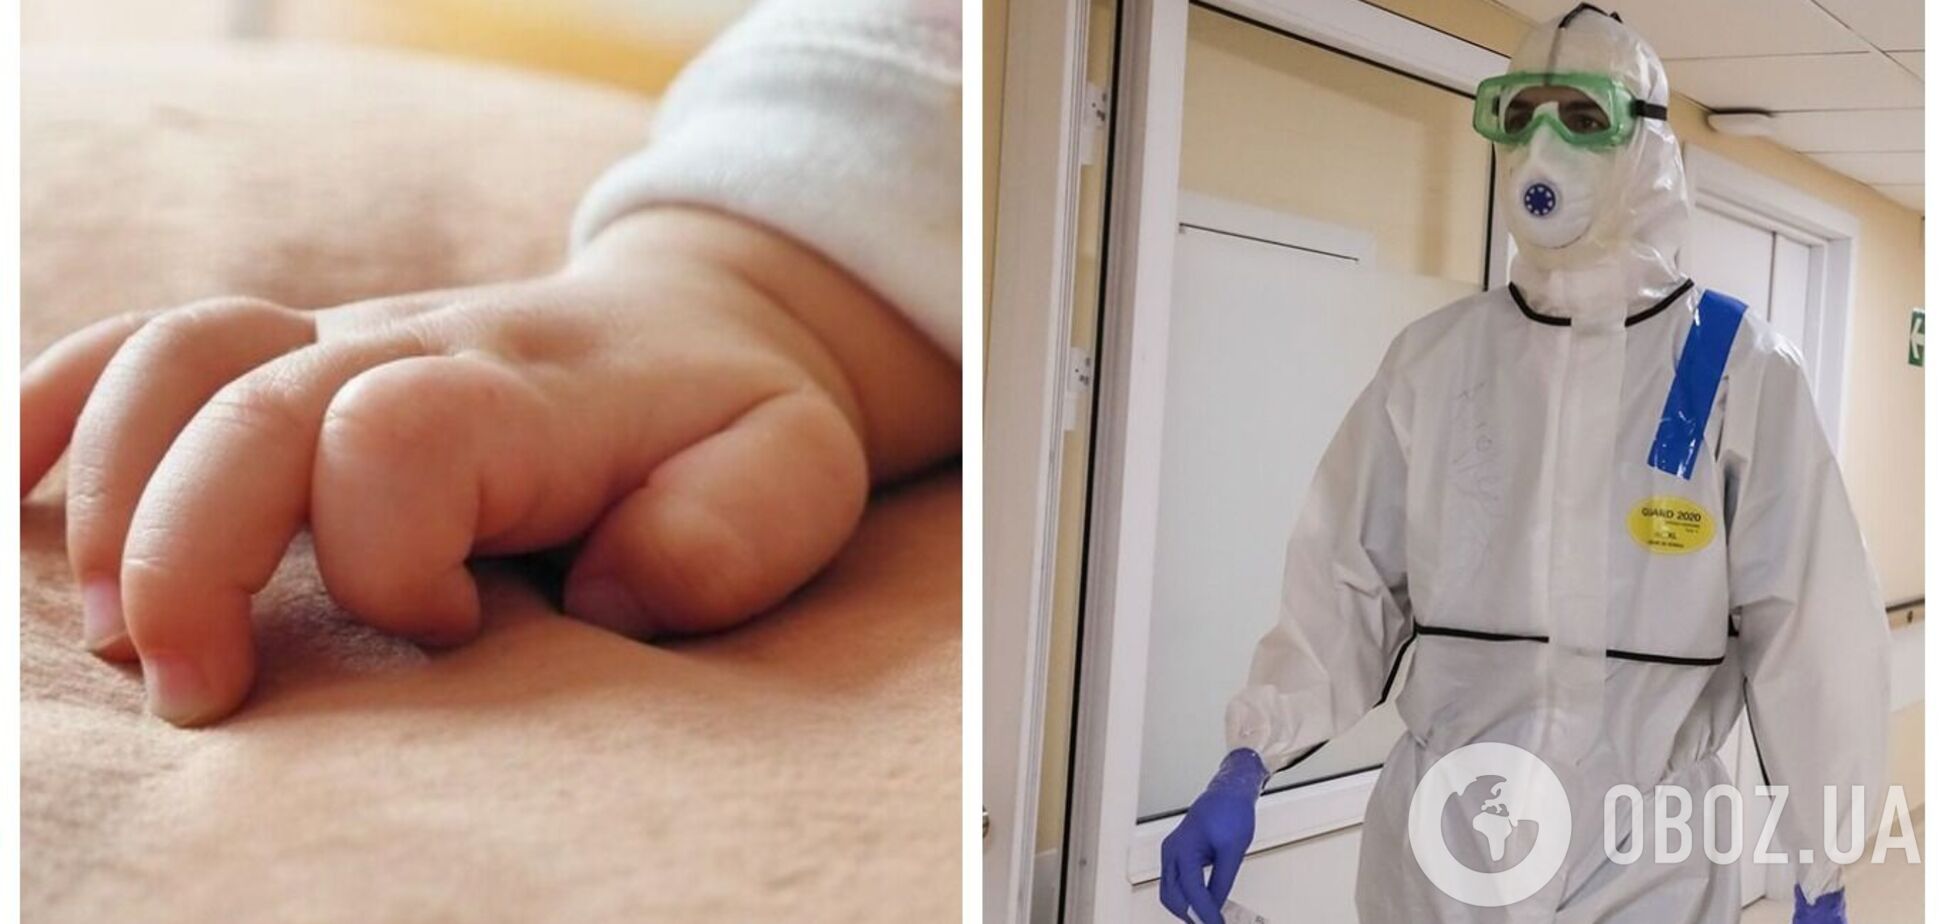 В Мариуполе от COVID-19 умер младенец, его родители не были вакцинированы. Детали трагедии